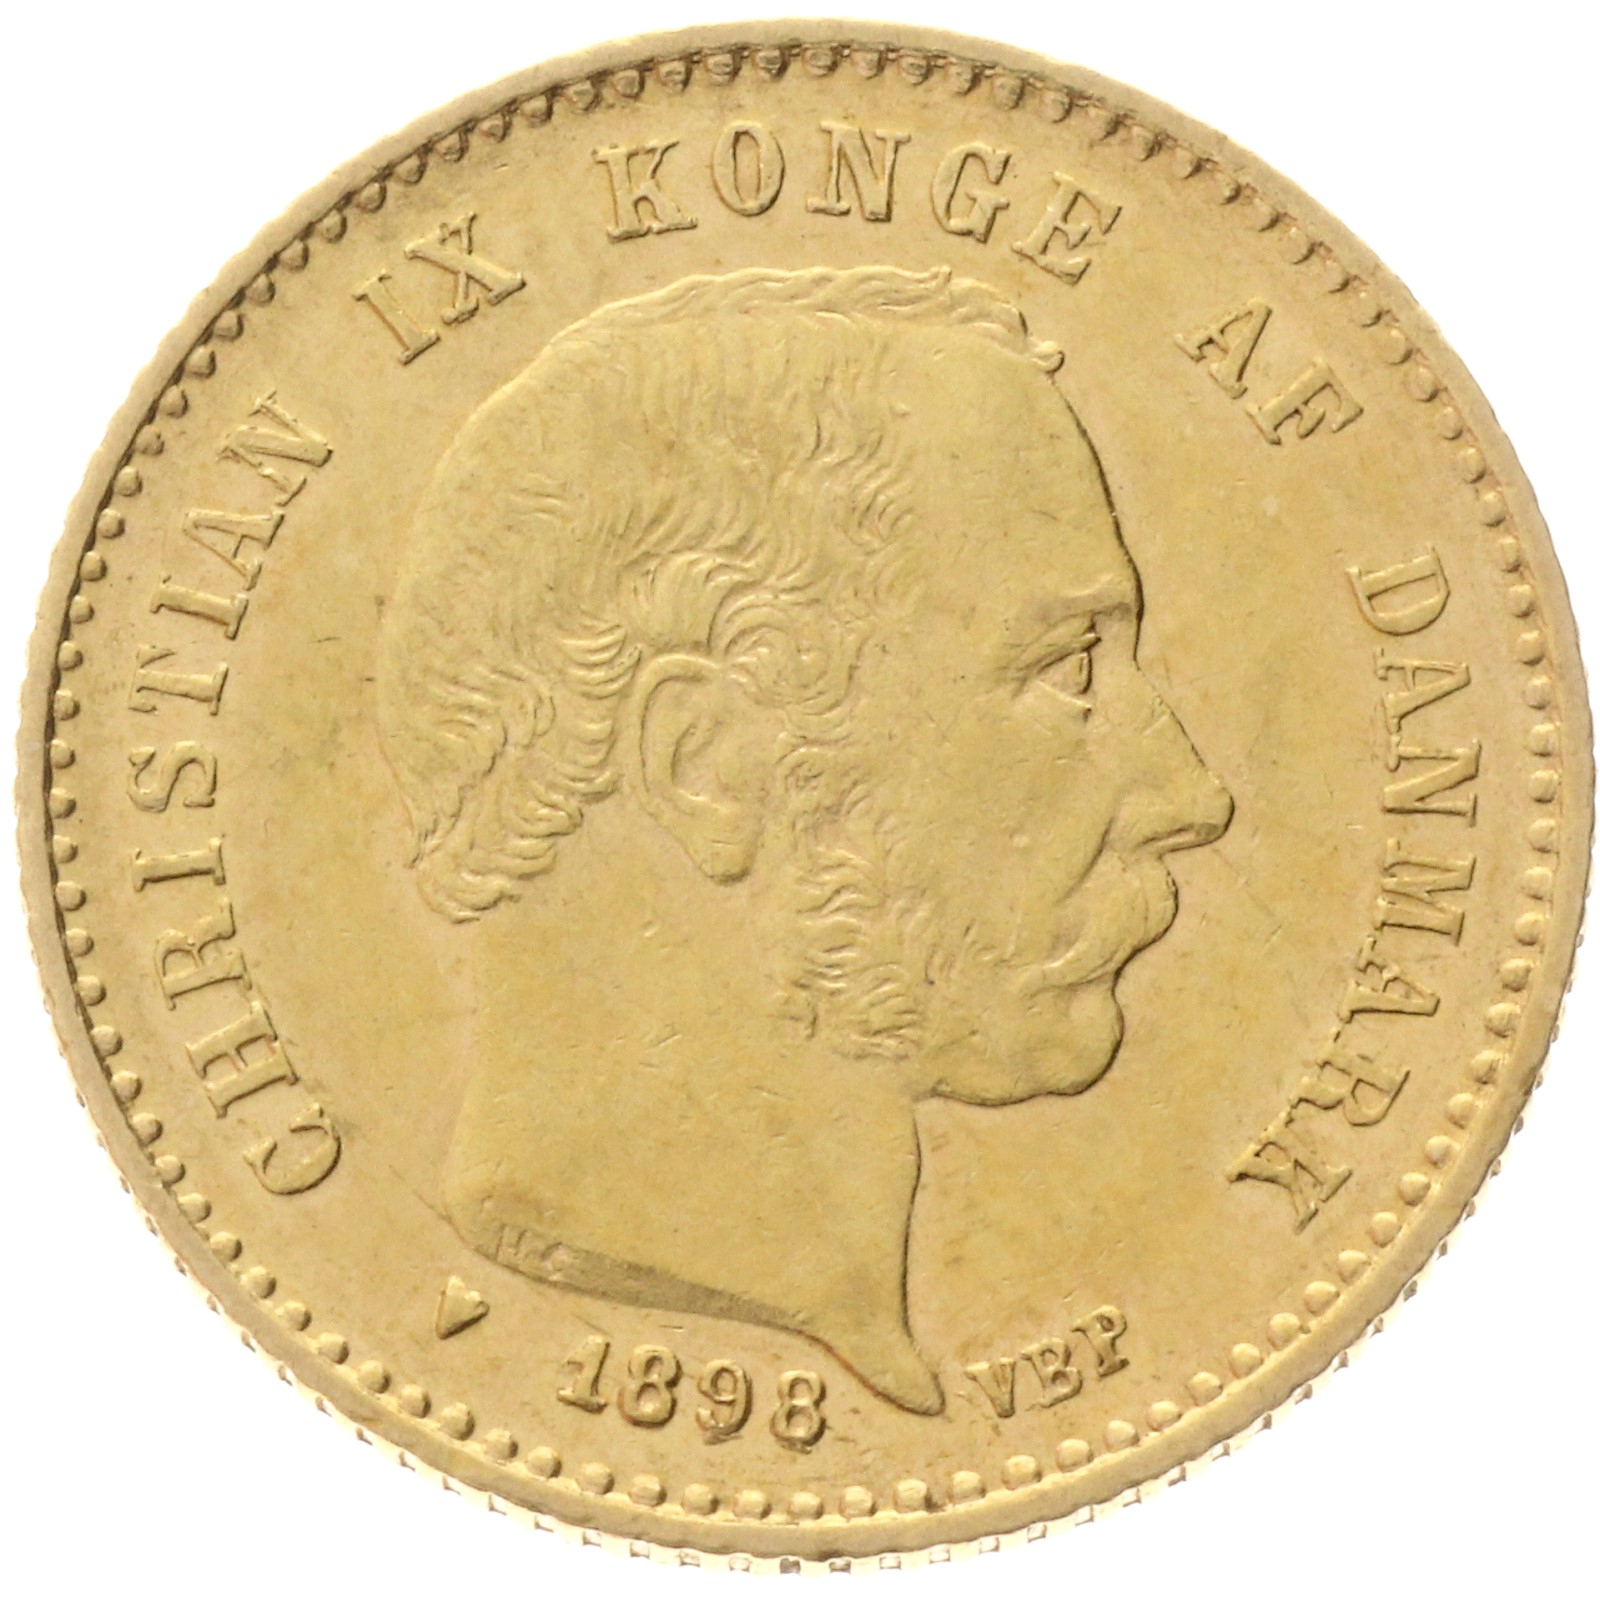 Denmark - 10 kroner - 1898 - Christian IX 